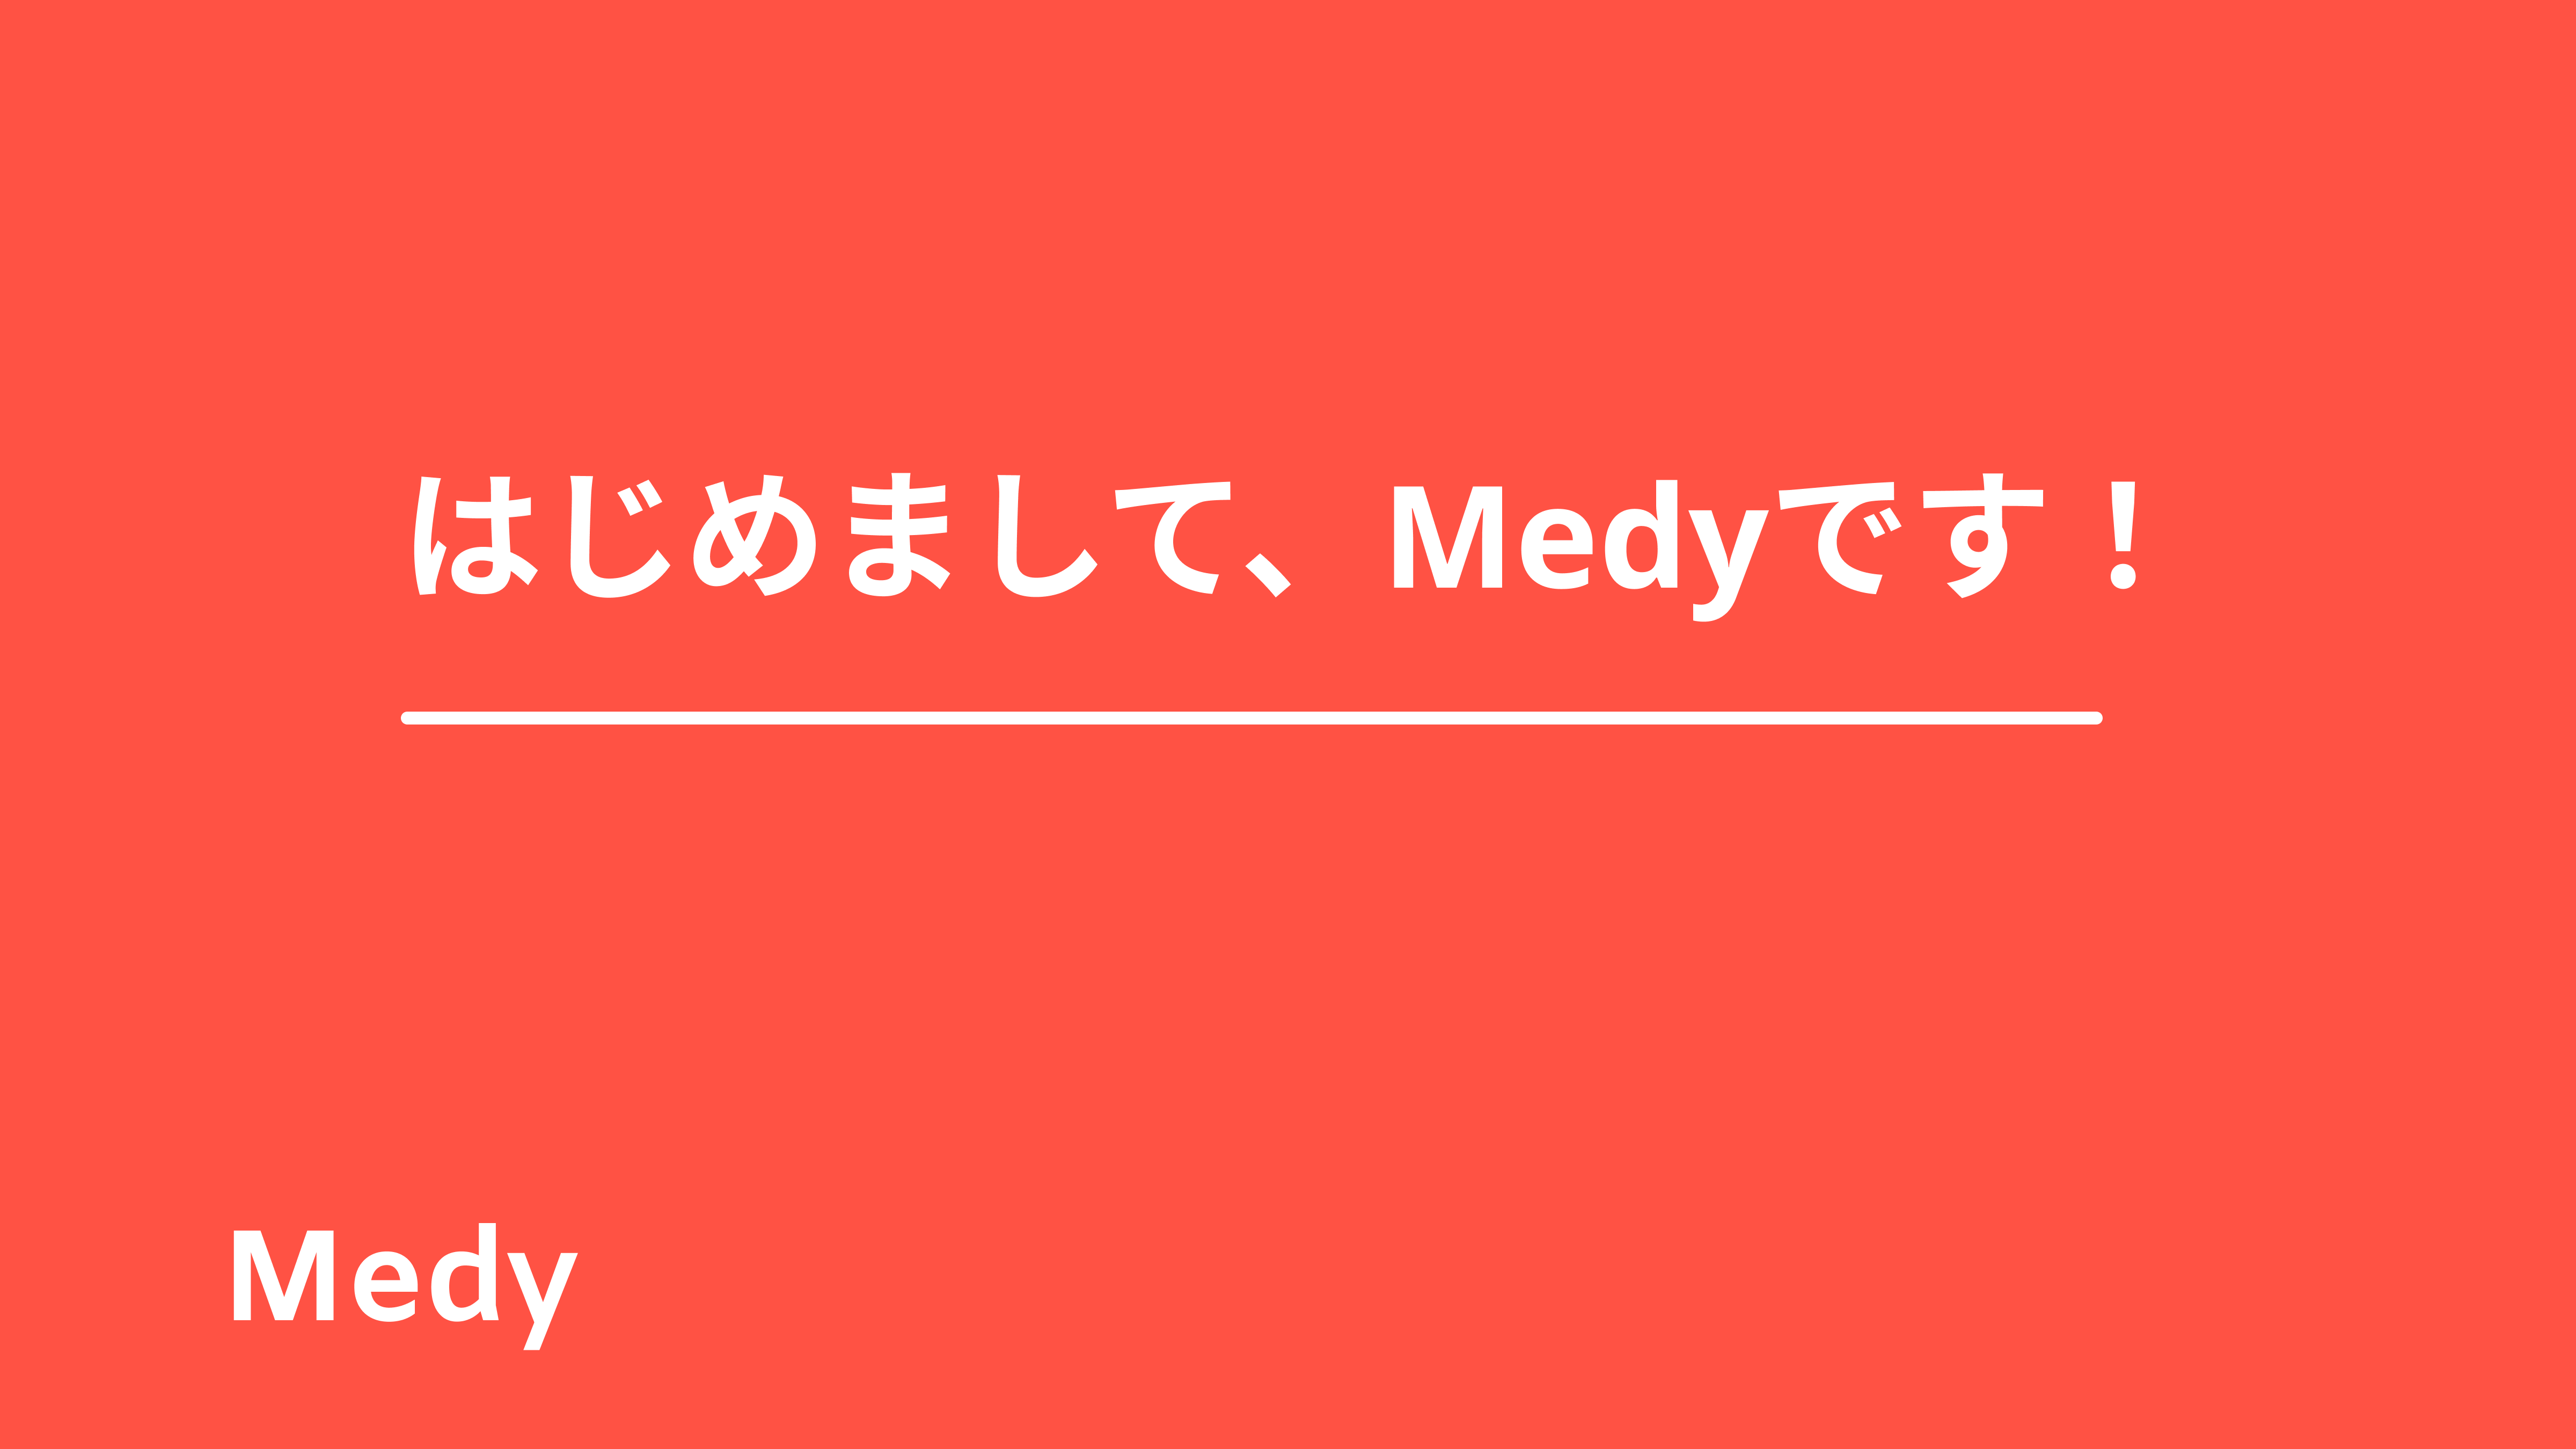 はじめまして、Medyです！